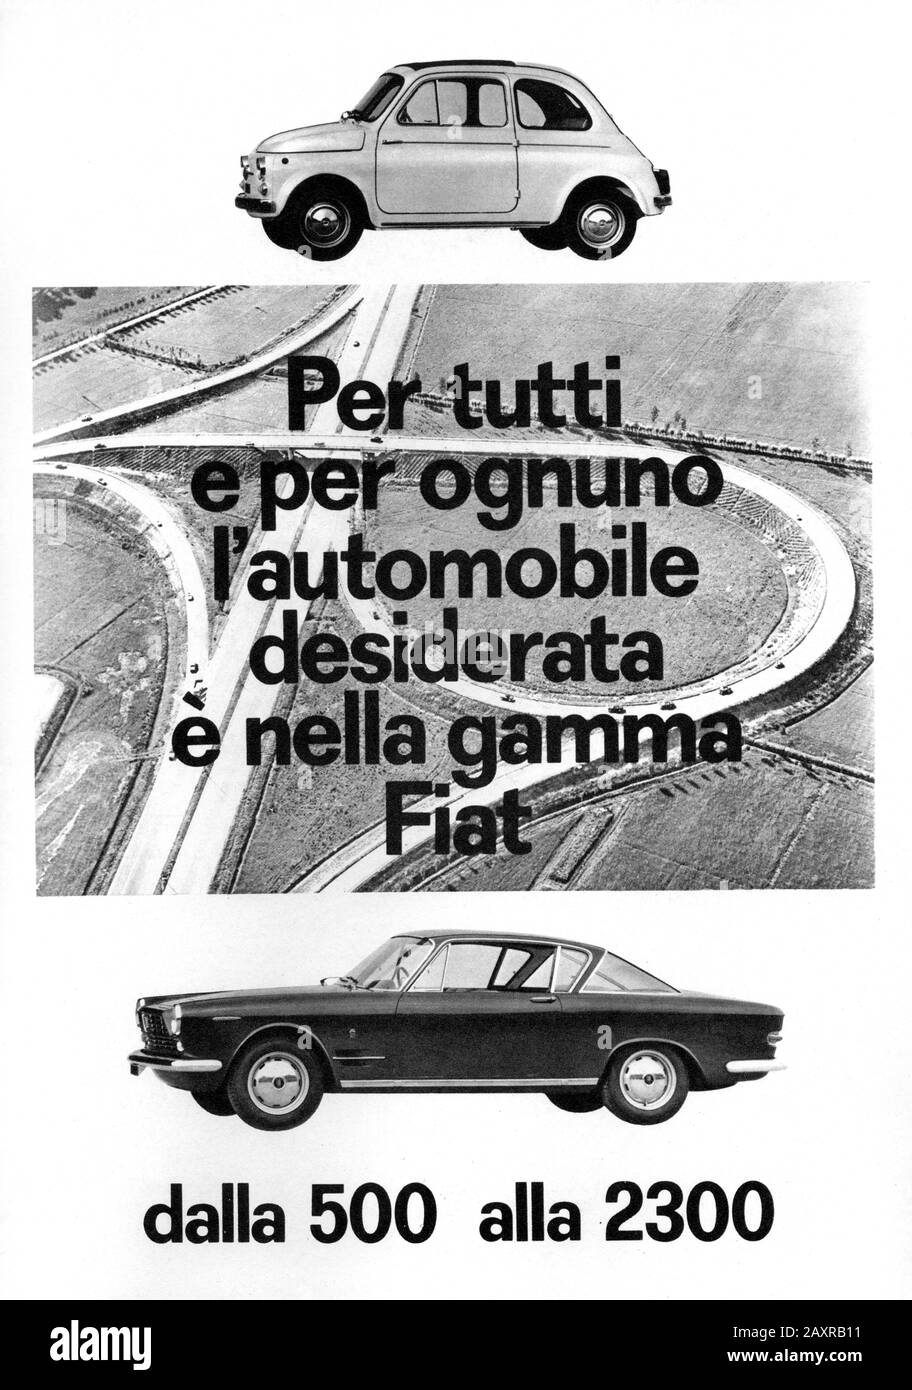 1962 , TORINO , ITALIEN : Die italienische Autoindustrie FIAT ( F.I.A.T. Fabbrica Italiana Automobili Torino ) Werbung für FIAT-AUTOS FIAT 500 und FIAT 2300. - GIANNI Agnelli - Automobil - automobili - Autos - ANNI 60 - SESSANTA - 60 - 60 - 60 - Industrie - pubblicità - FABBRICA - INDUSTRIA AUTOMOBILISTICA - FABRIK - GESCHICHTE - FOTO STORICHE --- Archivio GBB Stockfoto